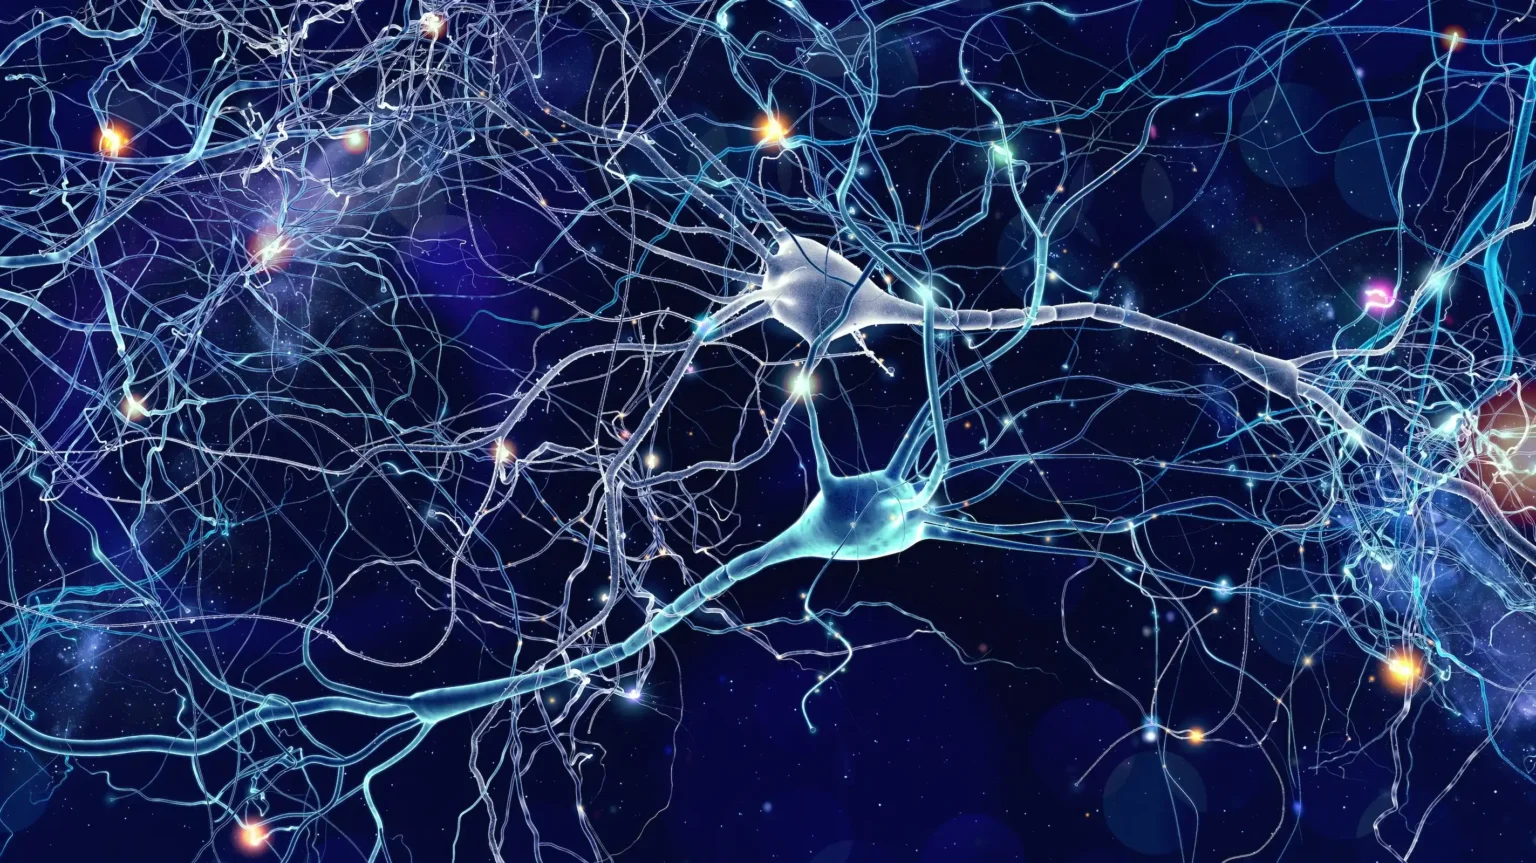 sztuczne neurony